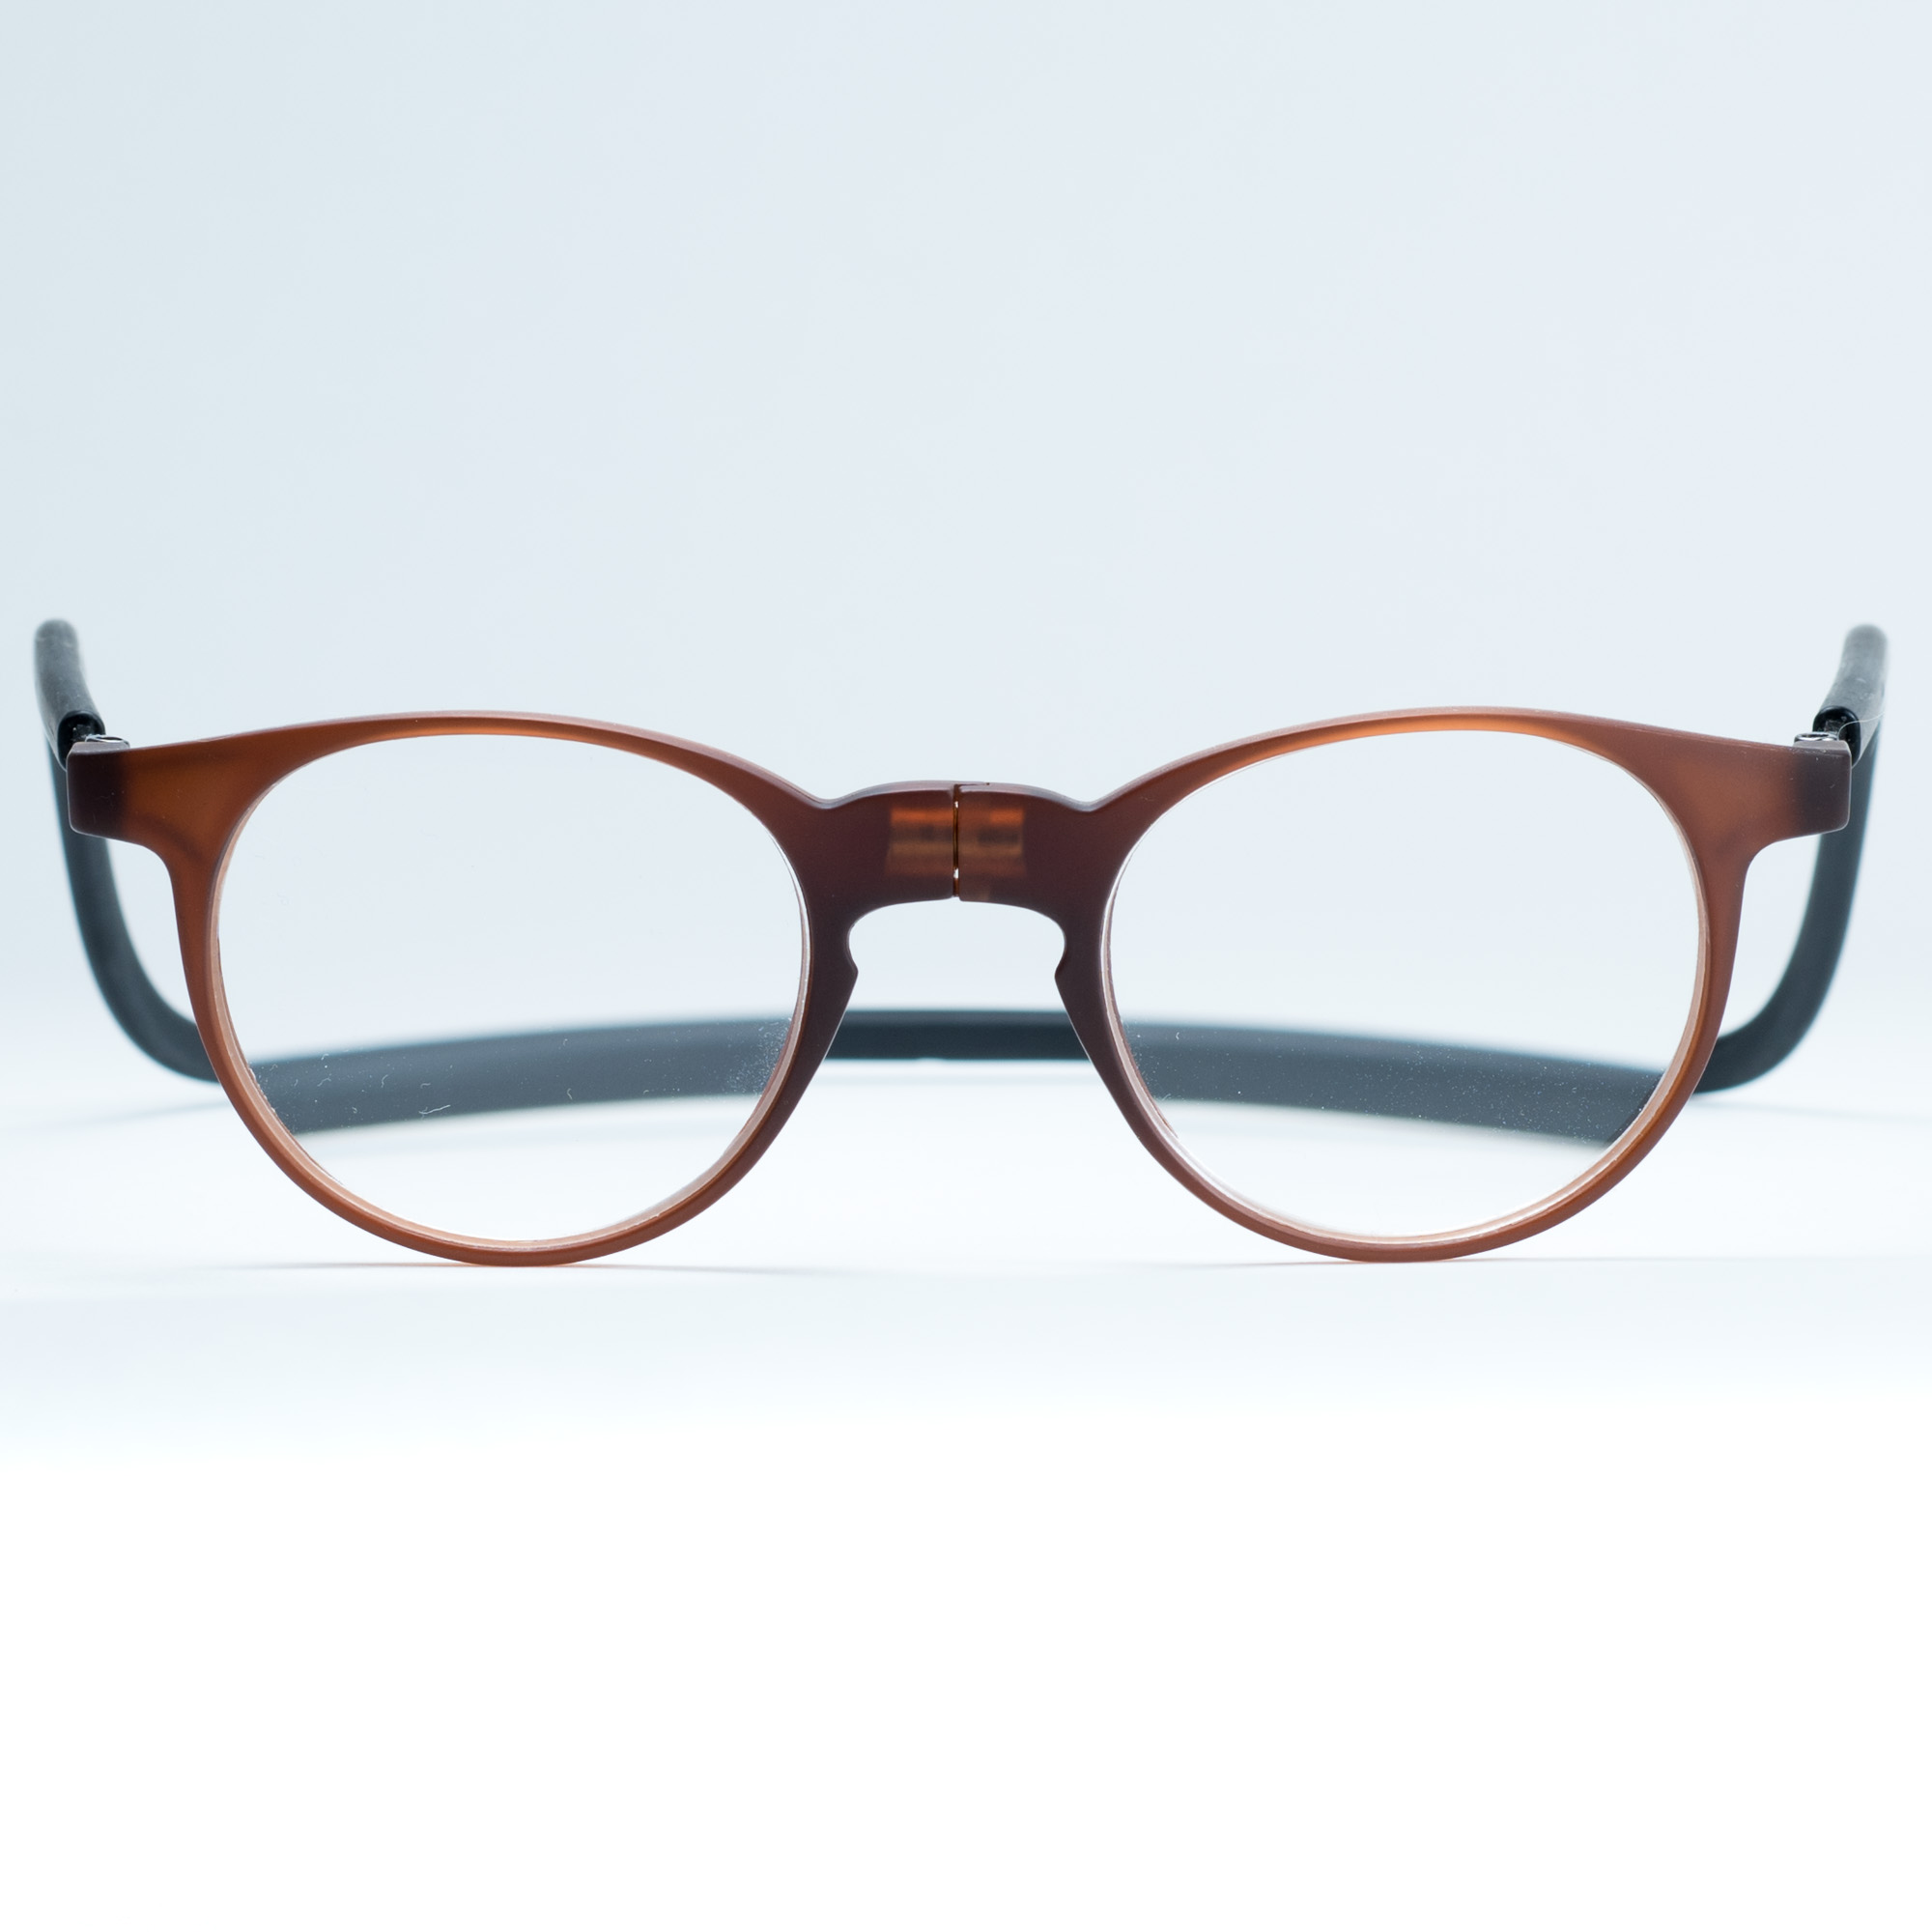 Easy Reader magneetleesbril leesbril met magneetsluiting model robin bruin